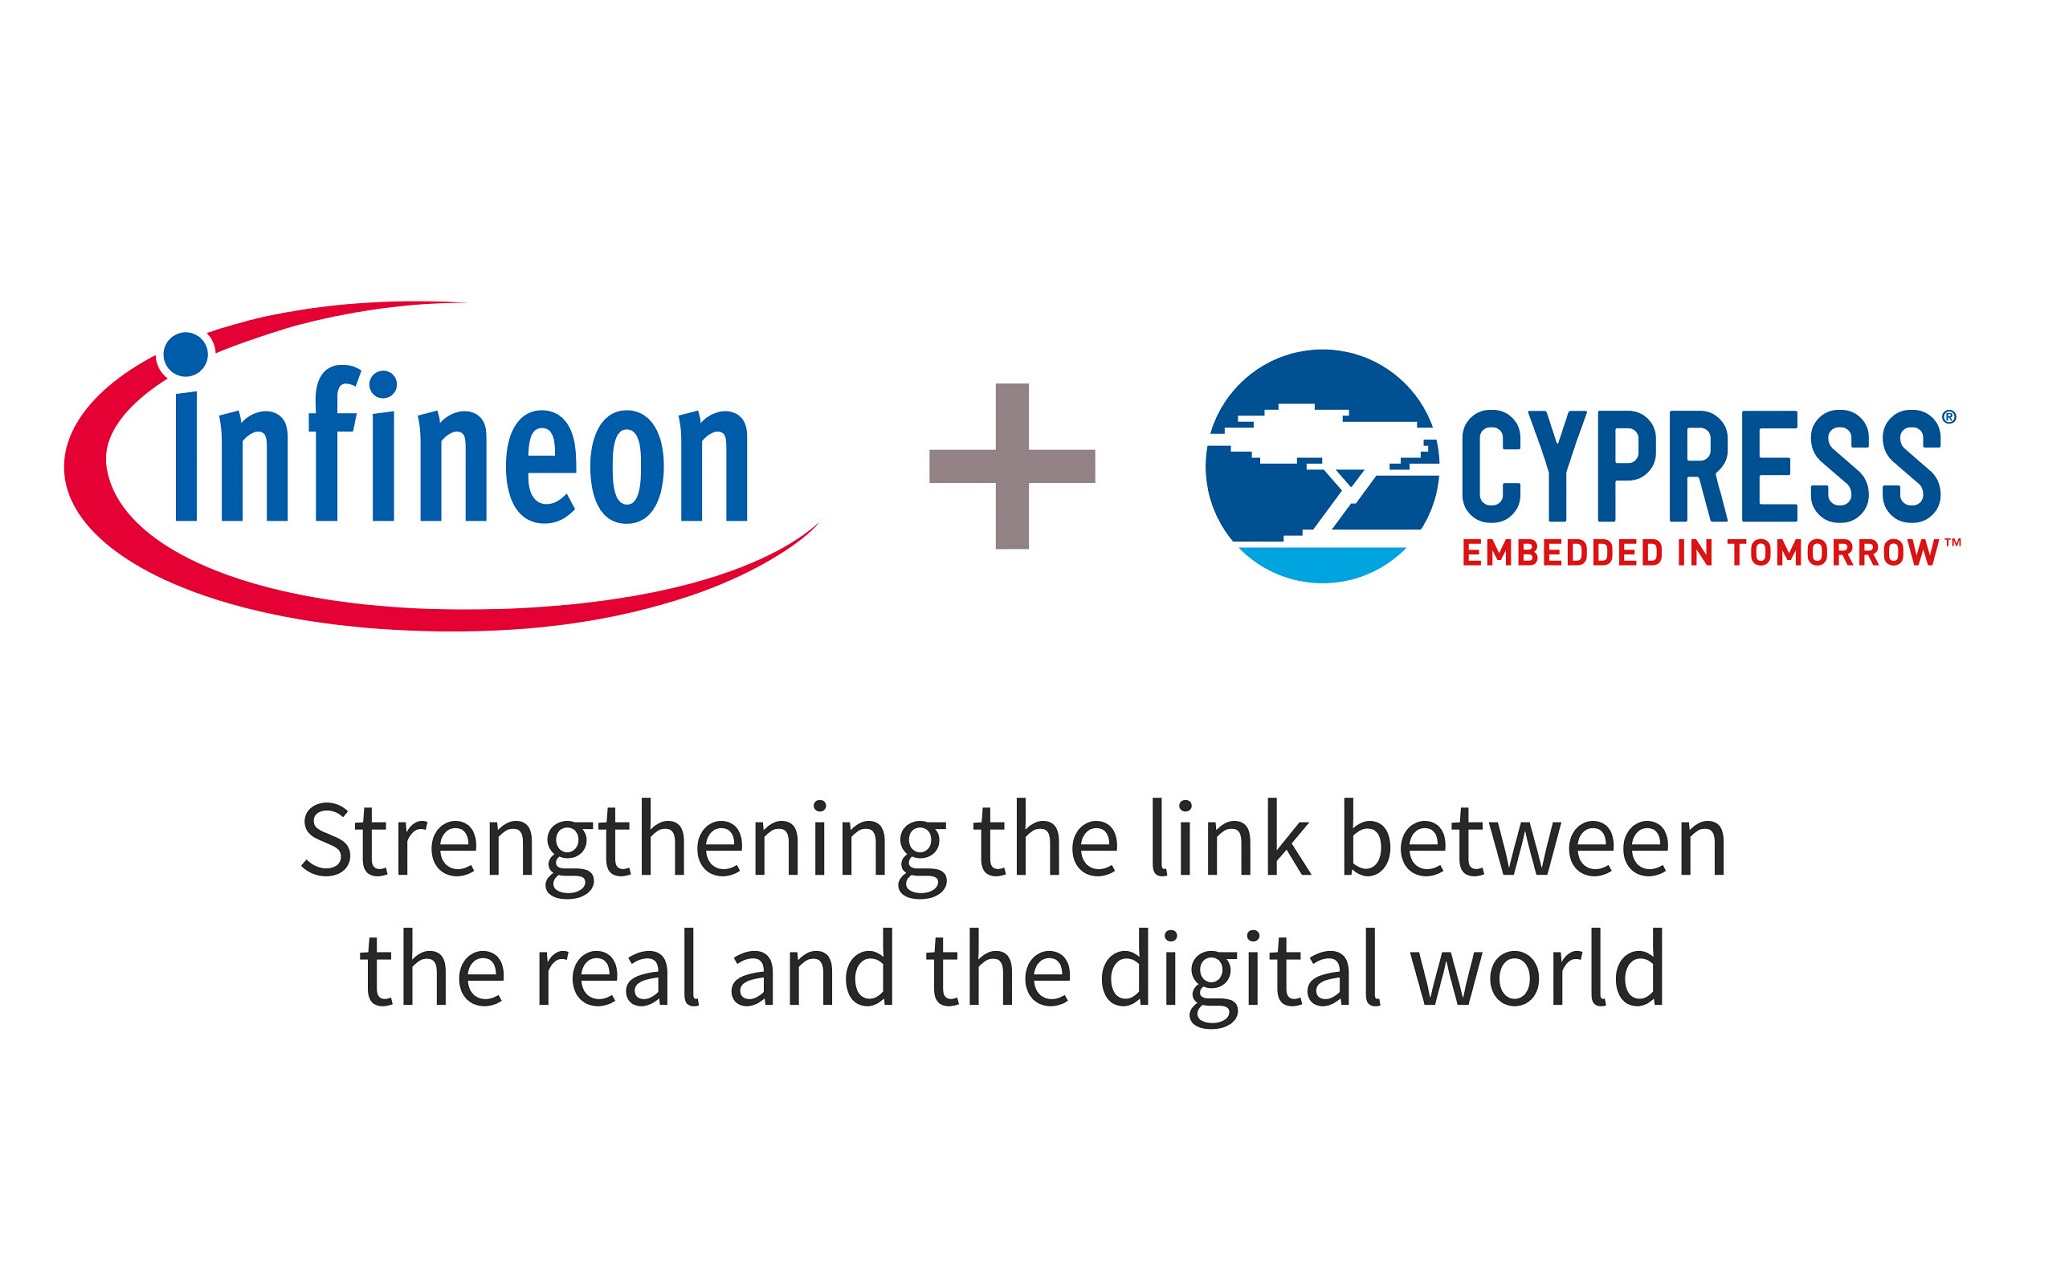 Hãng chip Infineon của Đức muốn mua lại Cypress giá 10 tỷ đô